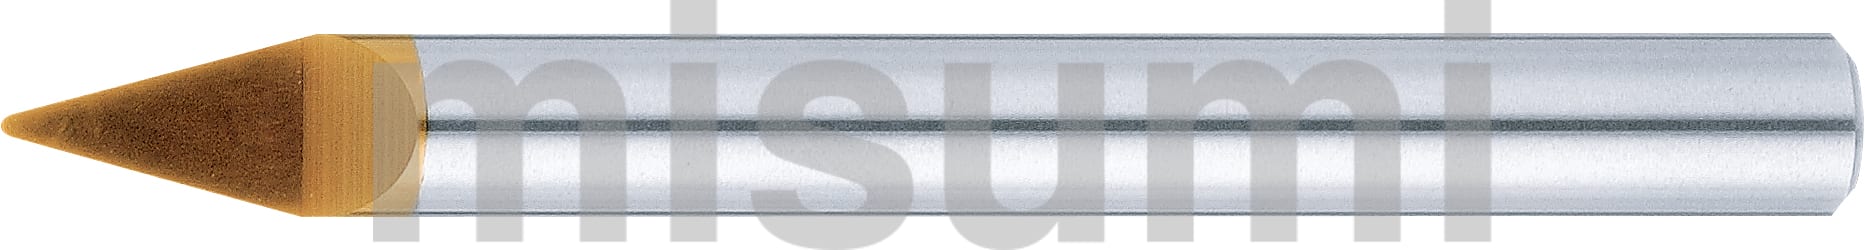 TSCシリーズ超硬テーパボールエンドミル 刻印用/1枚刃/半月タイプ